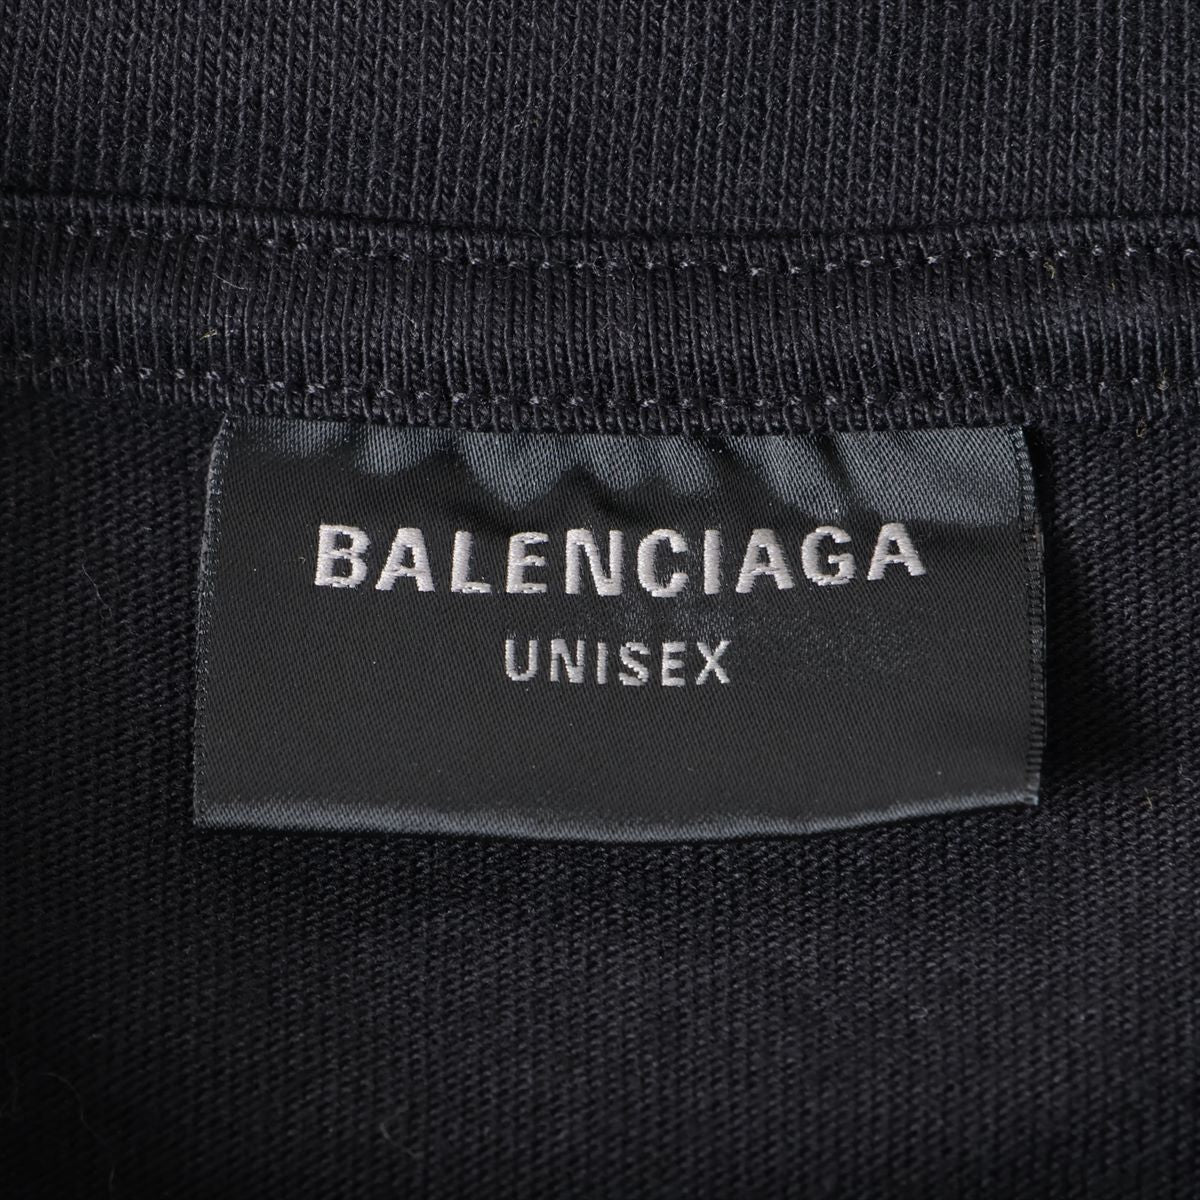 バレンシアガ 23年 コットン×ポリウレタン Tシャツ 2 ユニセックス ブラック  739028 ダメージ加工